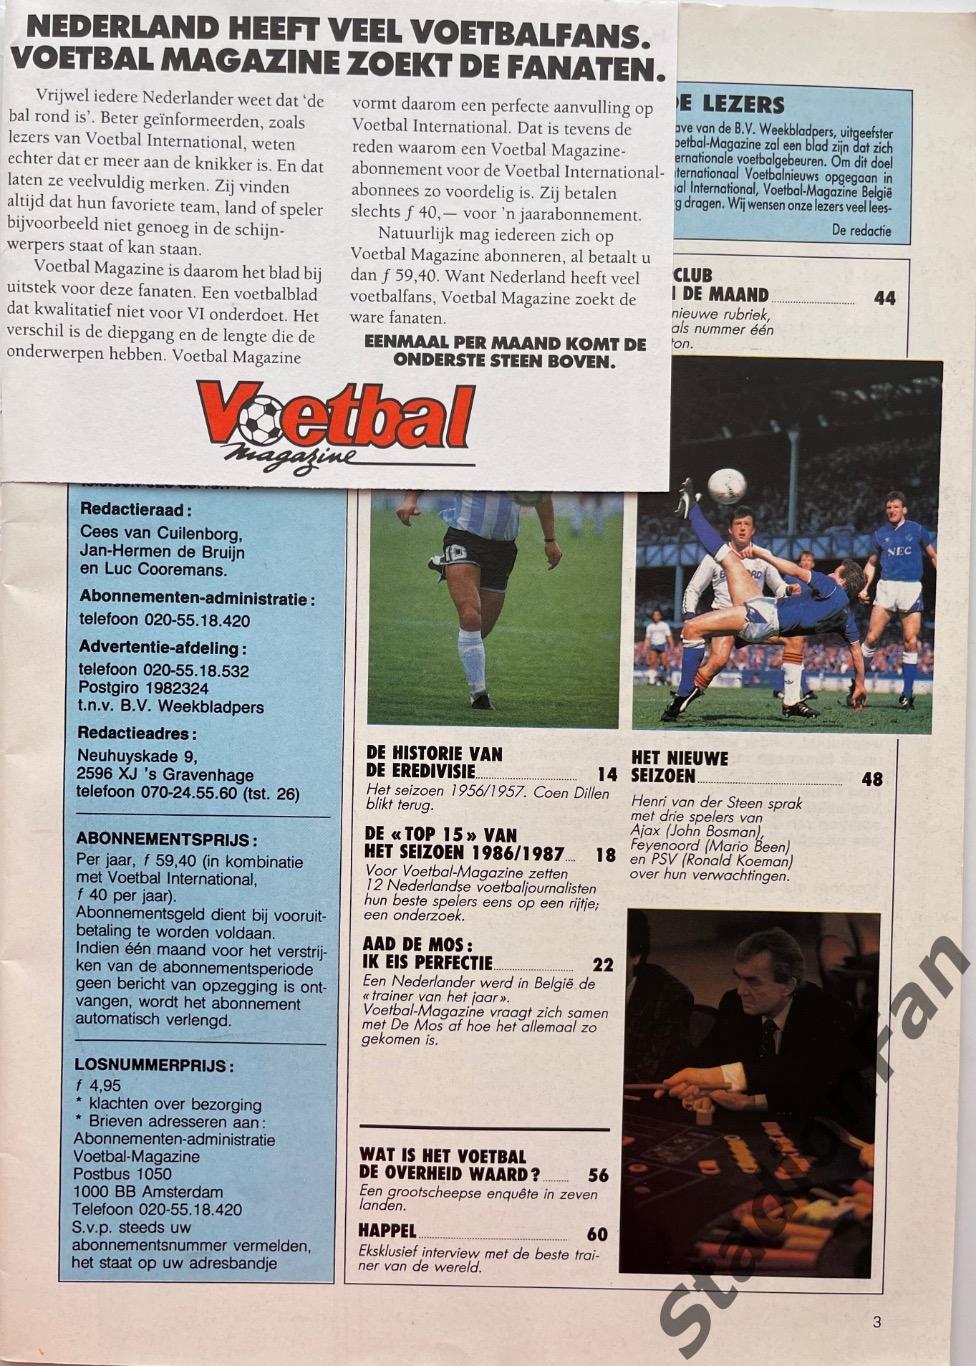 Журнал Voetbal - 1985 год. 3